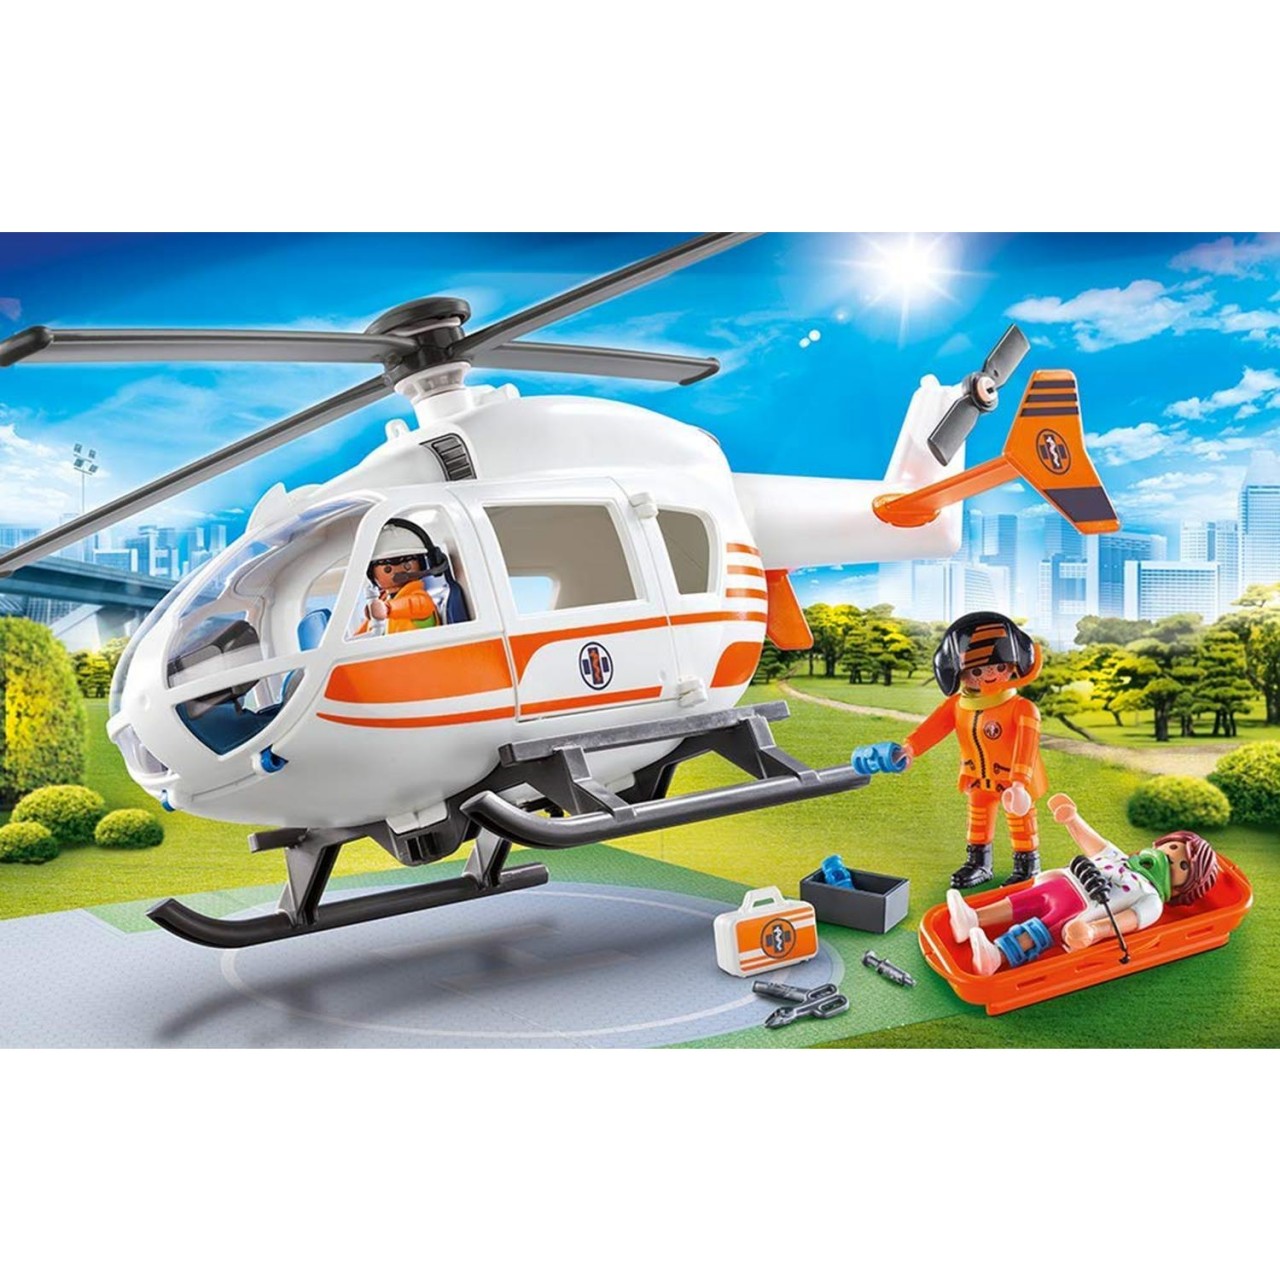 Playmobil 70048 Rettungshelikopter